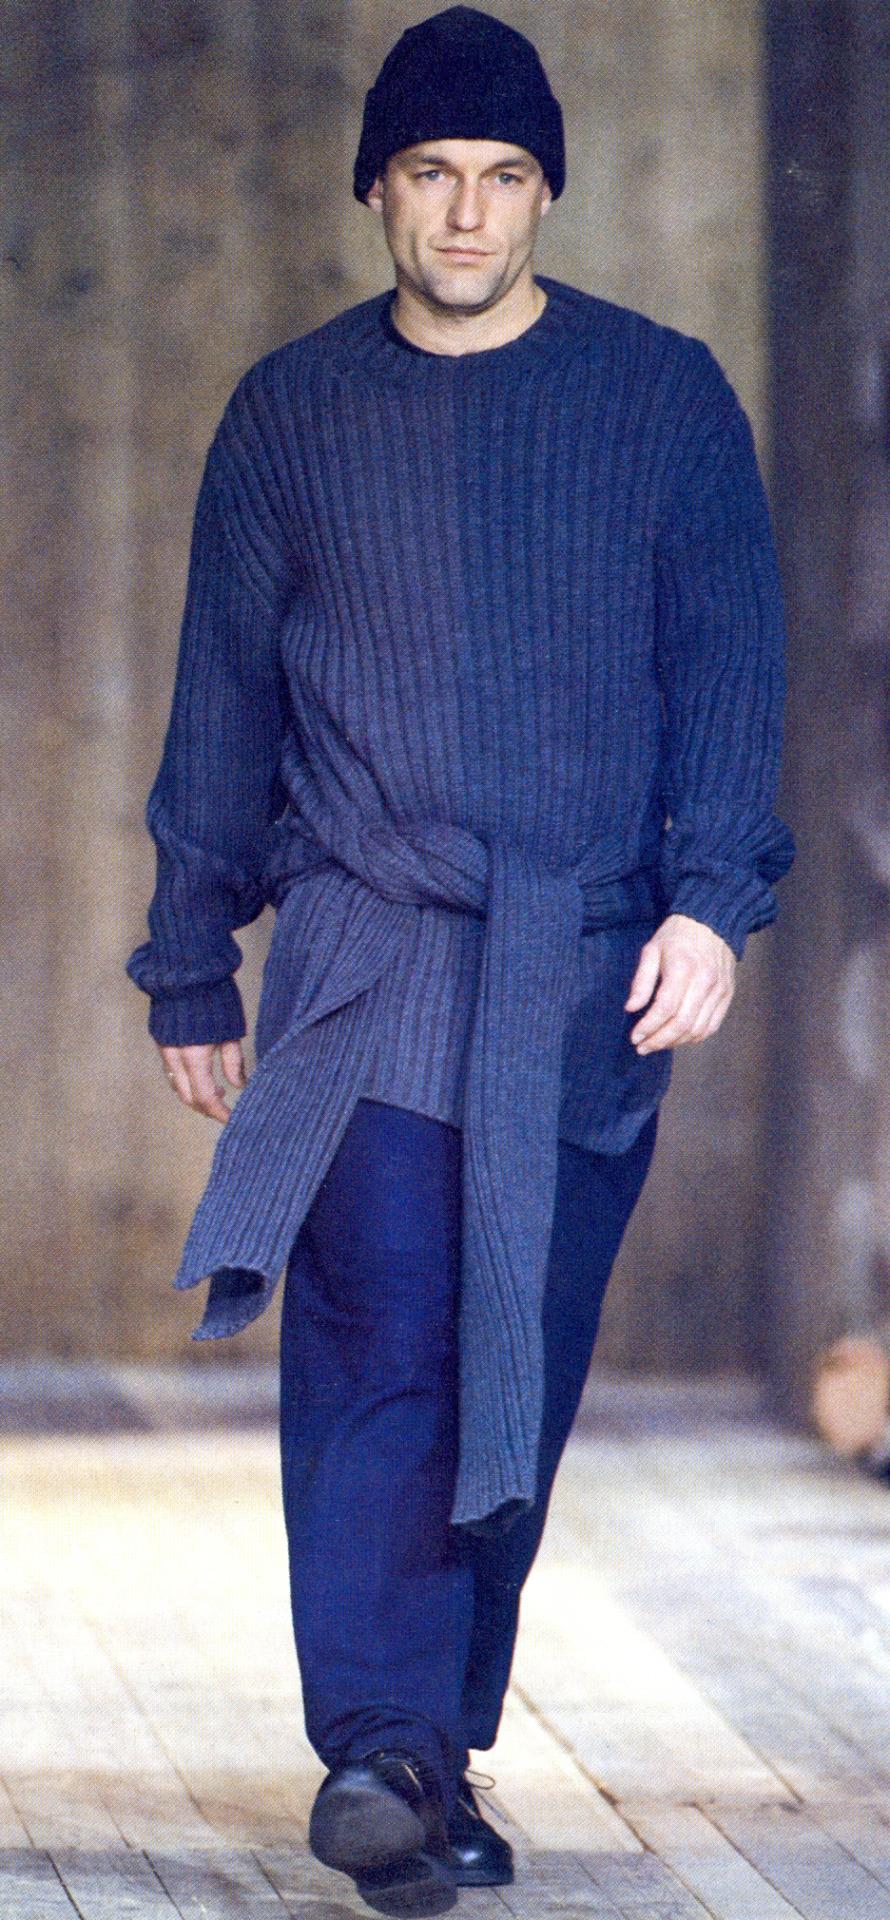 ▪ Yohji Yamamoto Grauer Rollkragenpullover aus Strick
▪ 100% Wolle
▪ Vier Ärmel (zwei werden um die Taille gebunden)
▪ Größe Medium
▪ Herbst-Winter 1992
